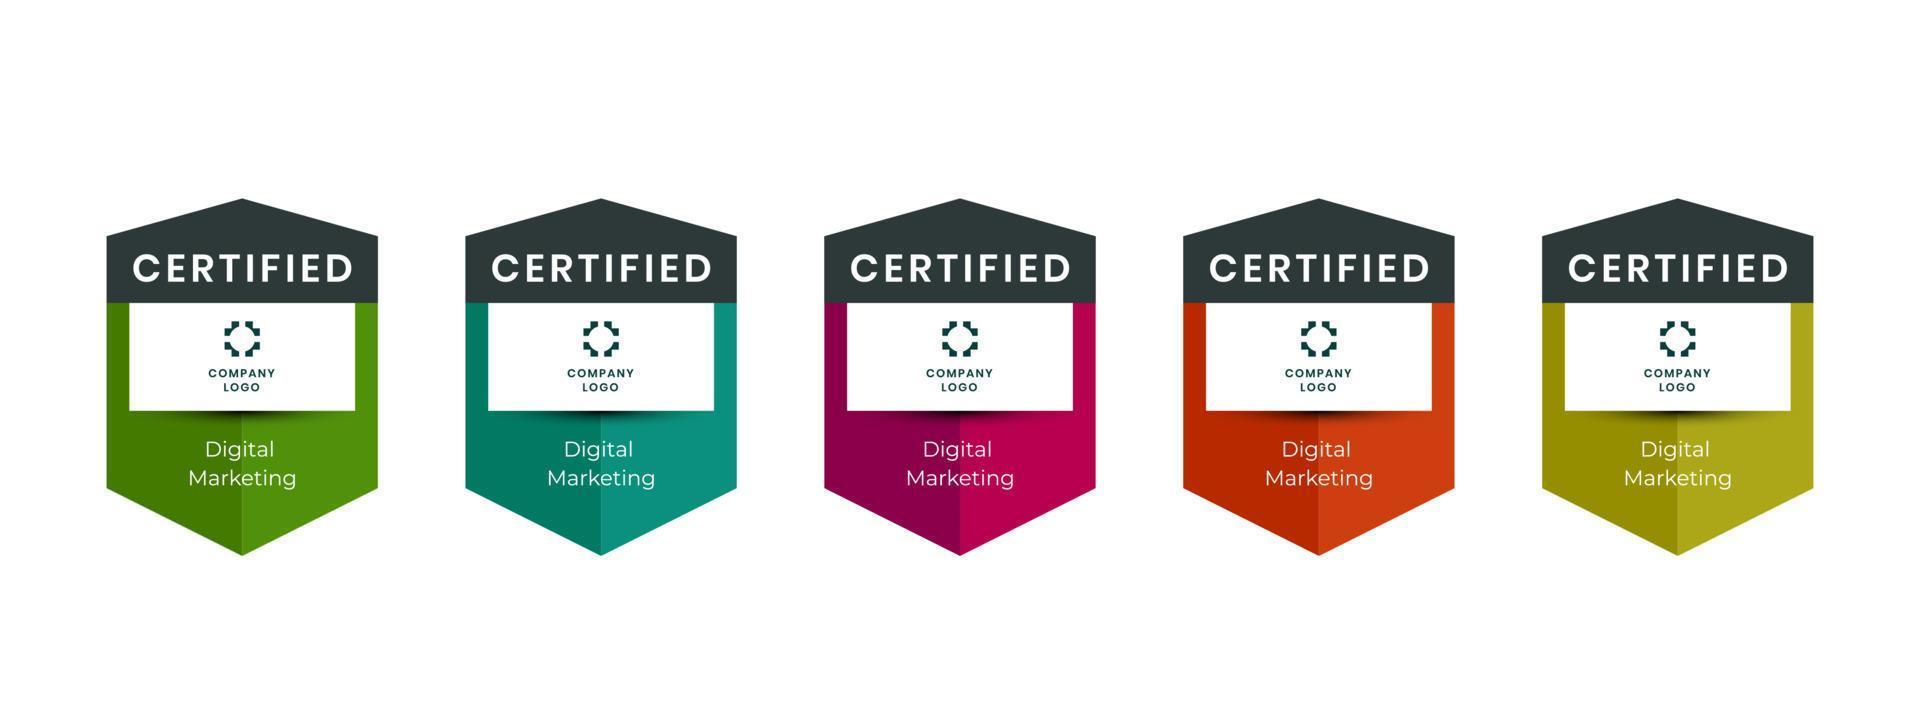 certificati professionali assegnati vettore distintivo logo. badge di certificazione digitale assegnati a professionisti tecnici che hanno superato con successo un esame di certificazione o conseguito